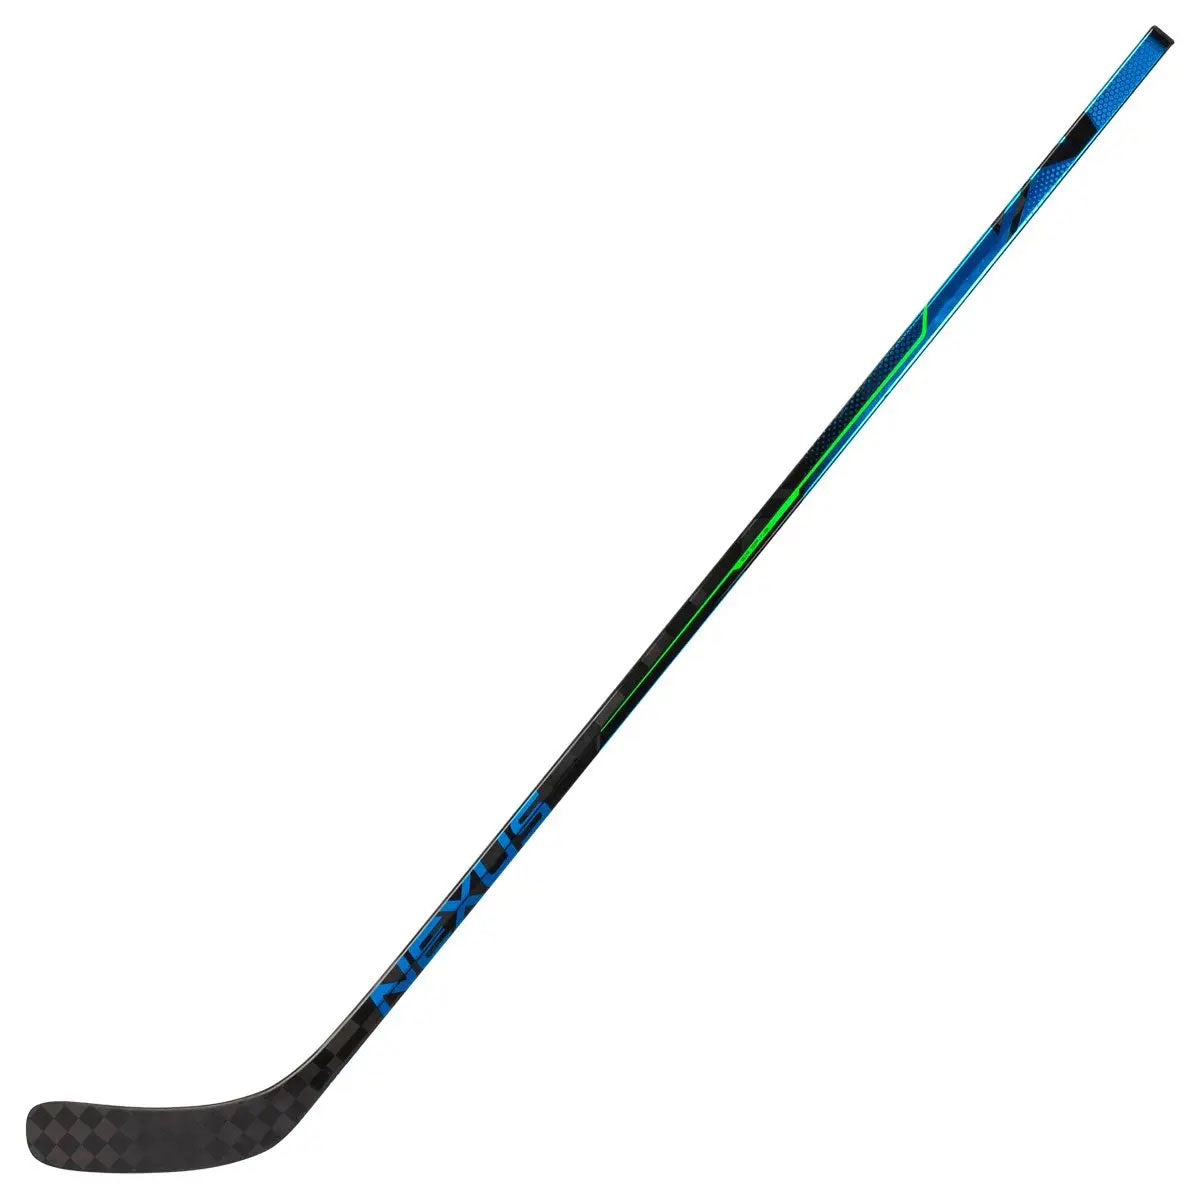 Bauer S21 Nexus GEO Hockey Stick - Junior, 50 Flex